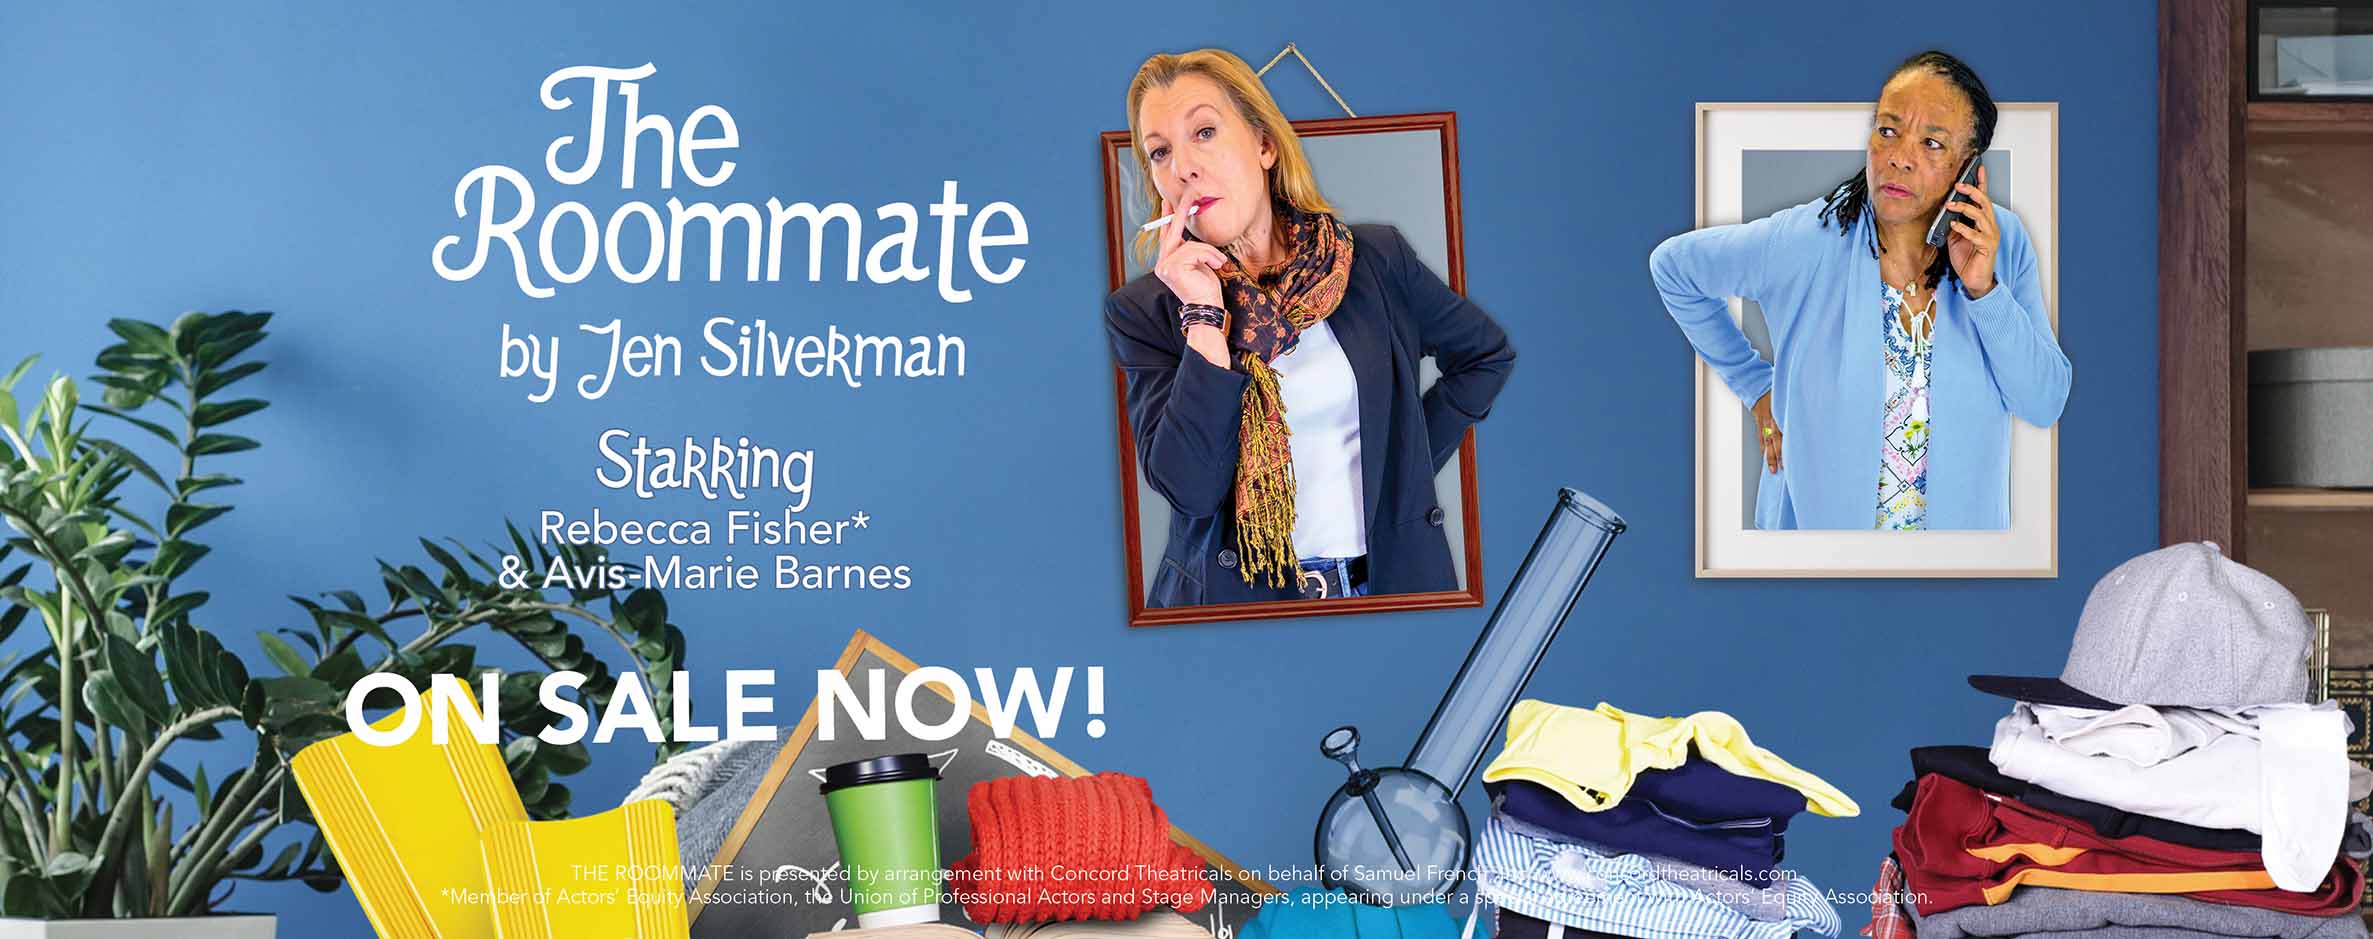 The Roommate by Jen Silverman: On Sale Now!